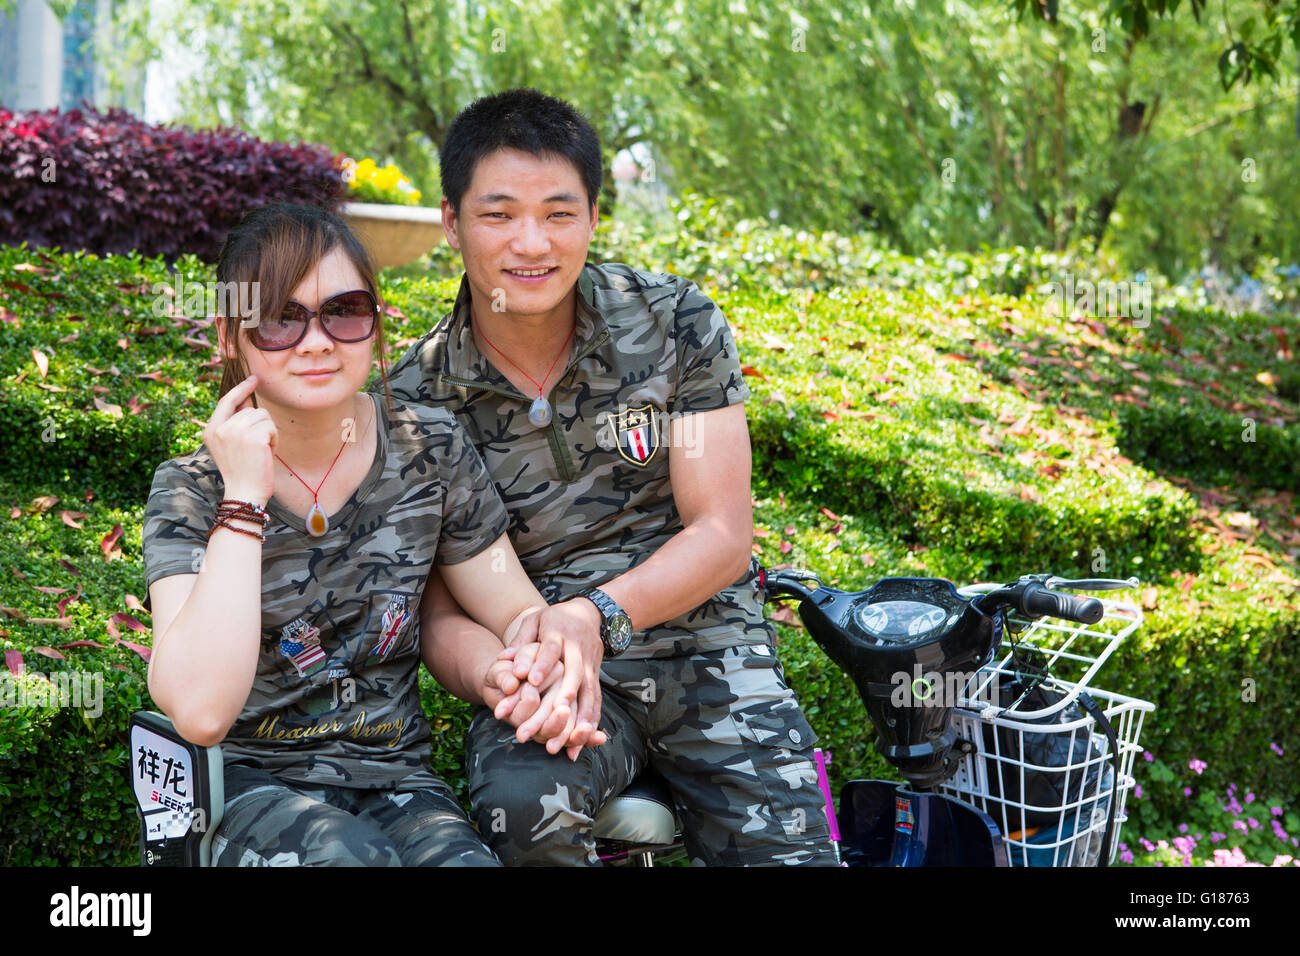 Giovane romantico coppia cinese su uno scooter tenendo le mani nel parco indossando un esercito militare uniforme Foto Stock